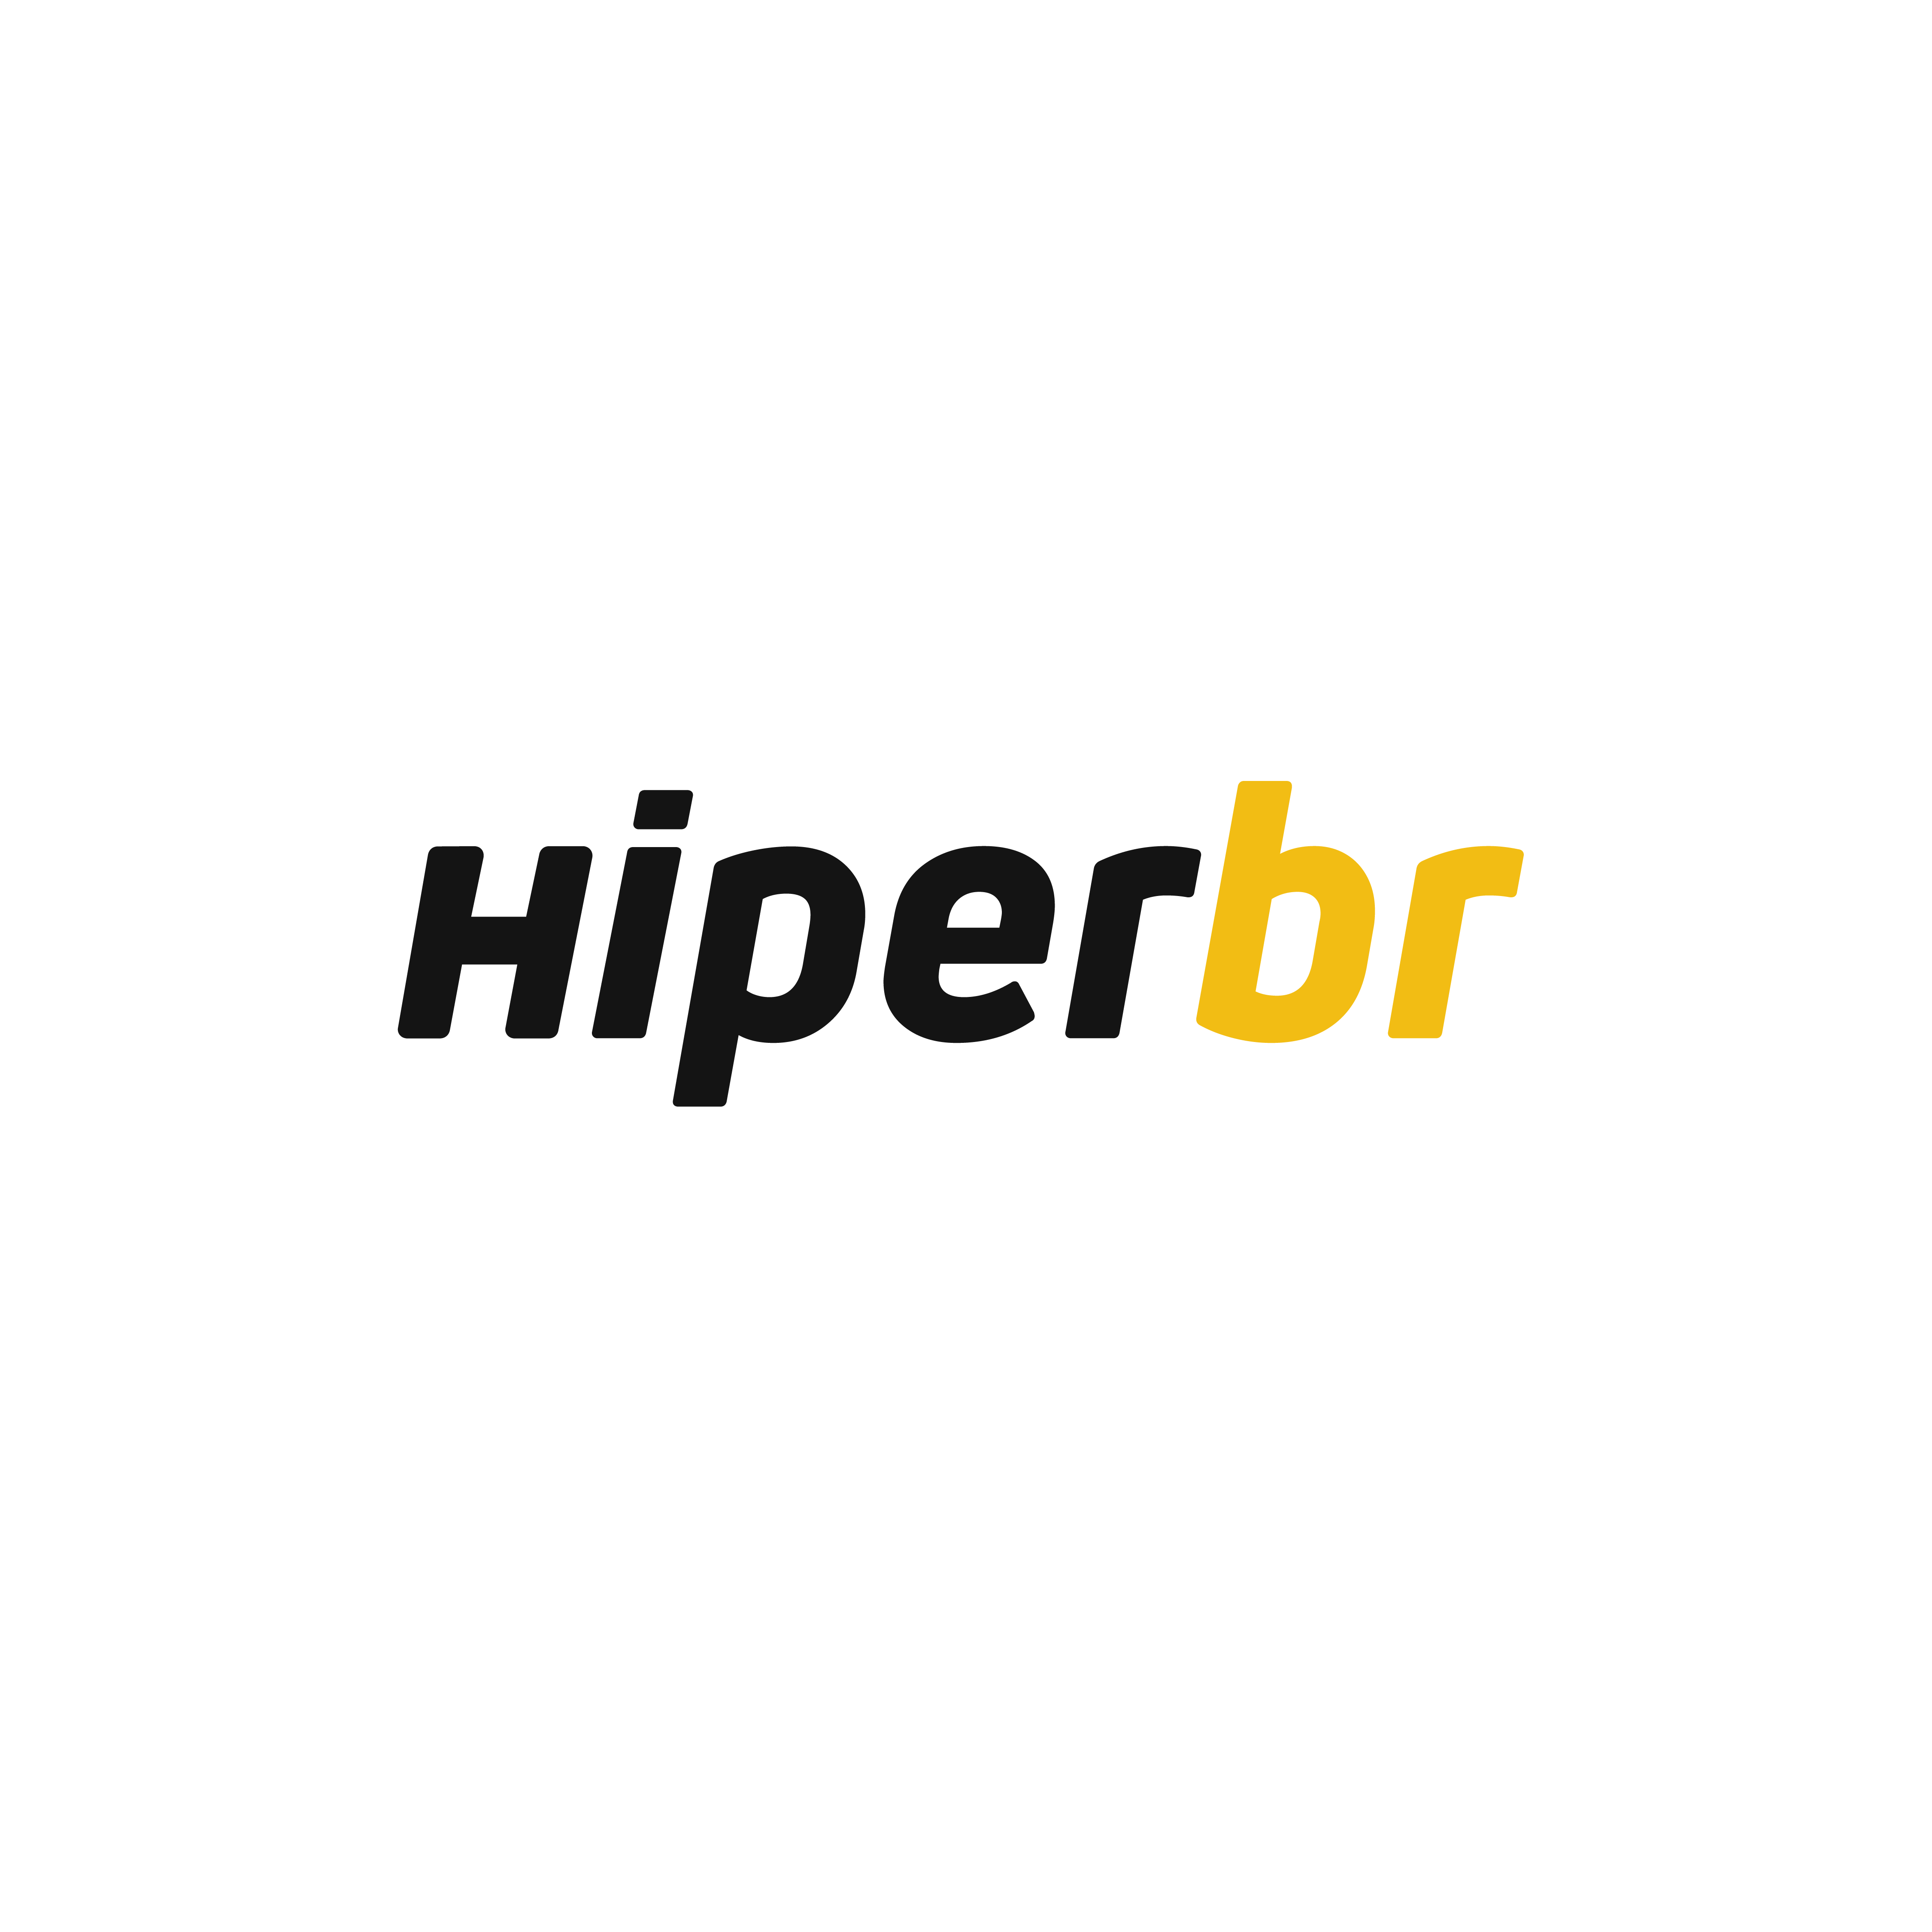 HiperBr